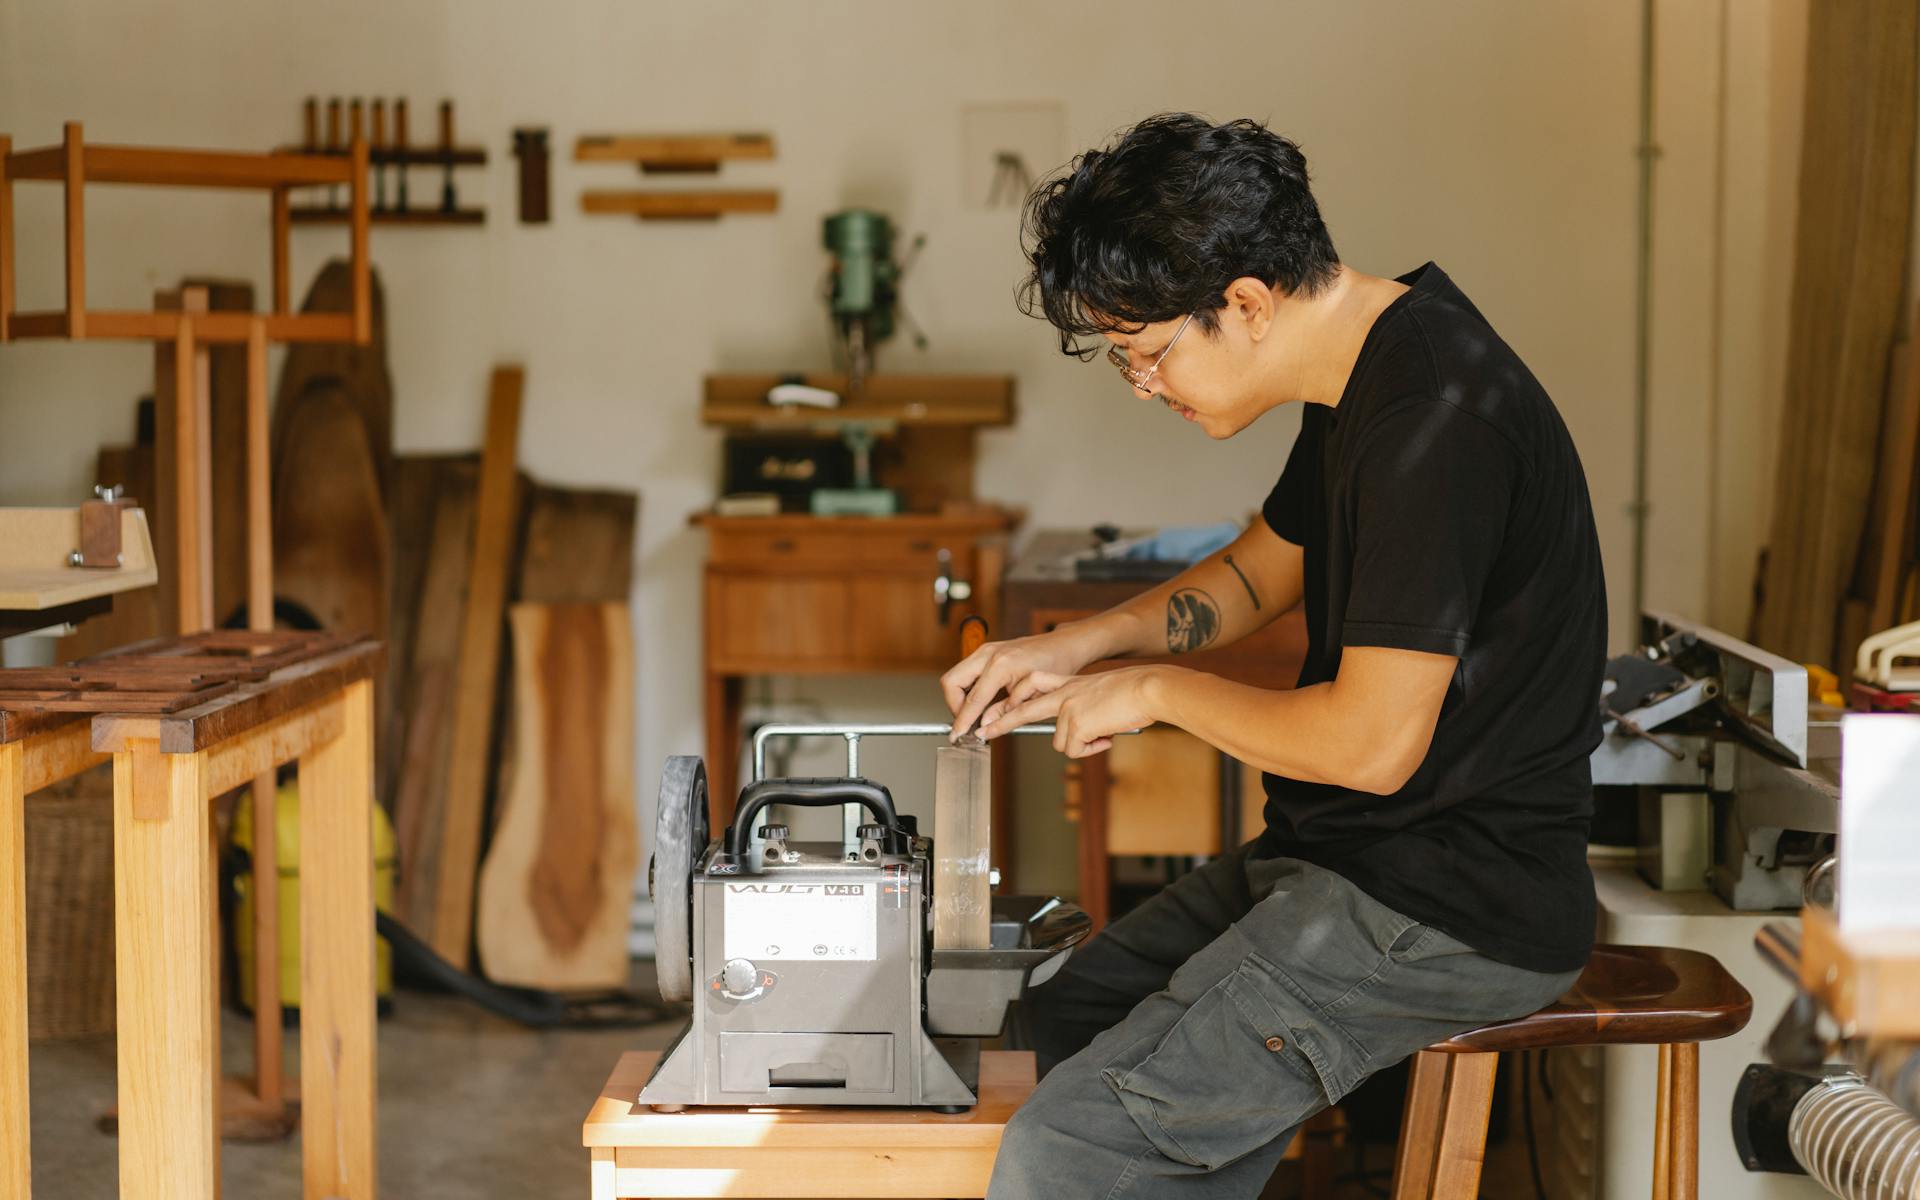 Professional ethnic artisan sitting at sharpening tool